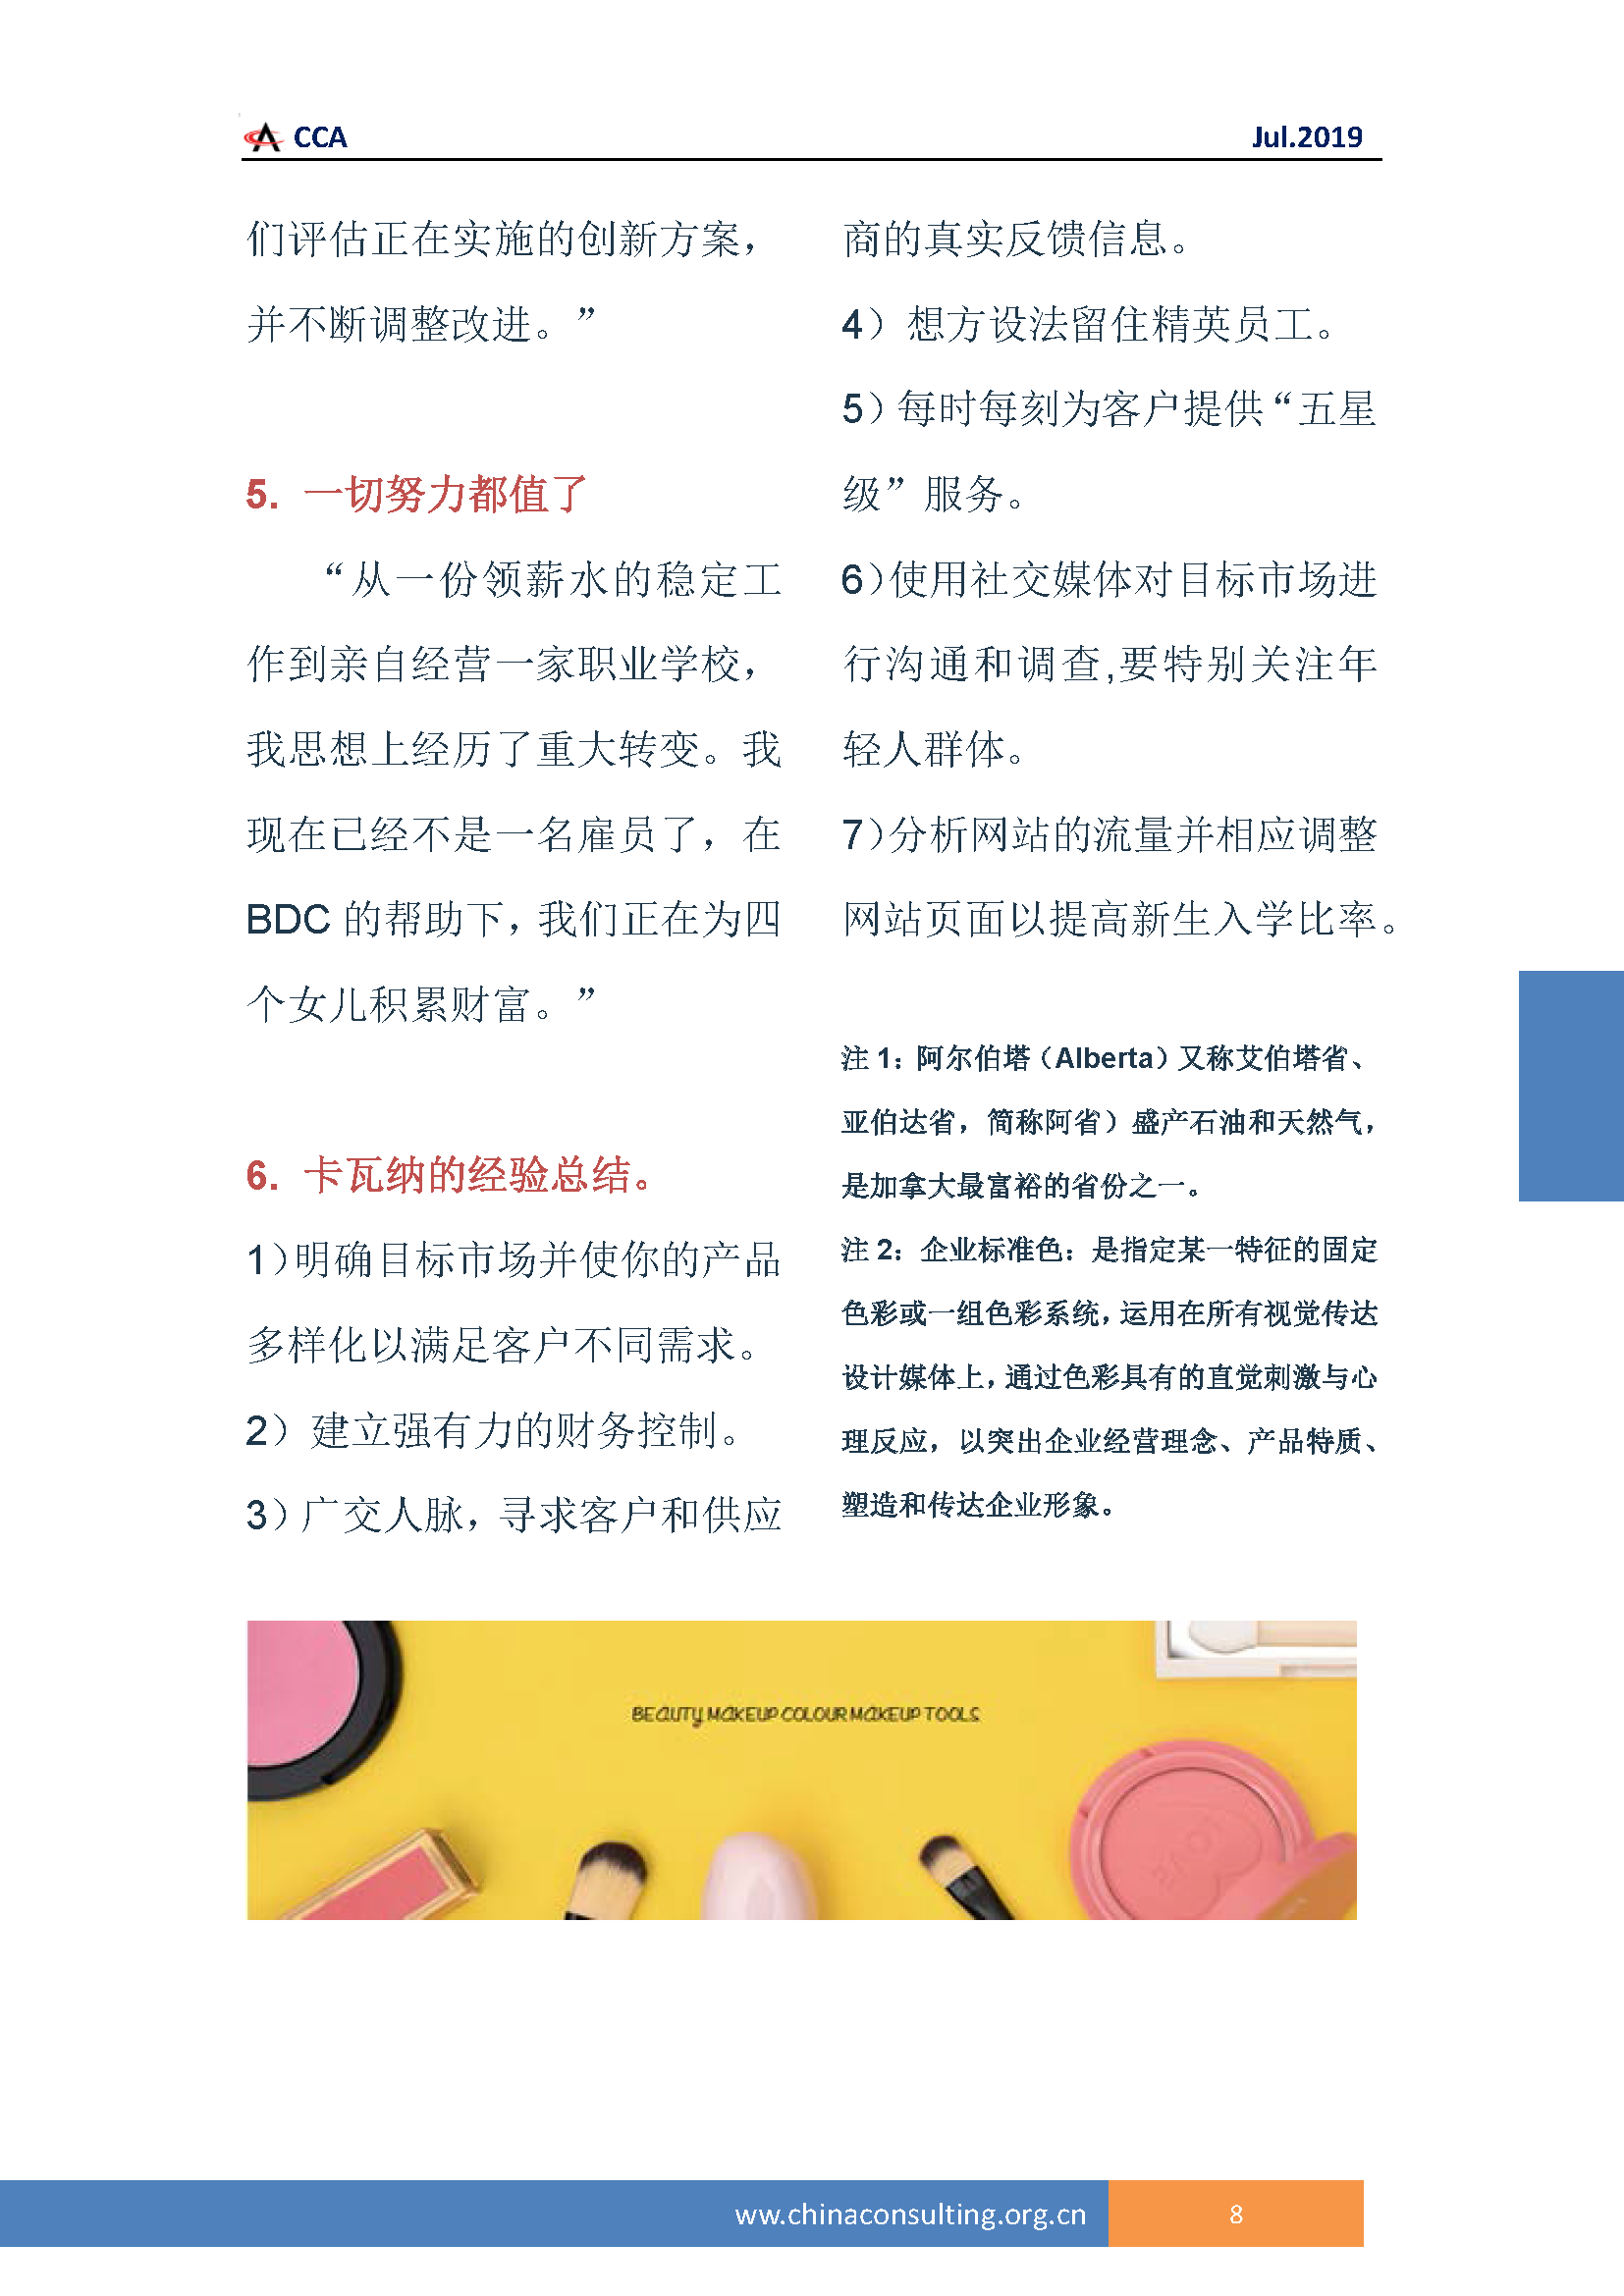 中国科技咨询协会国际快讯（第三十二期）_页面_11.png